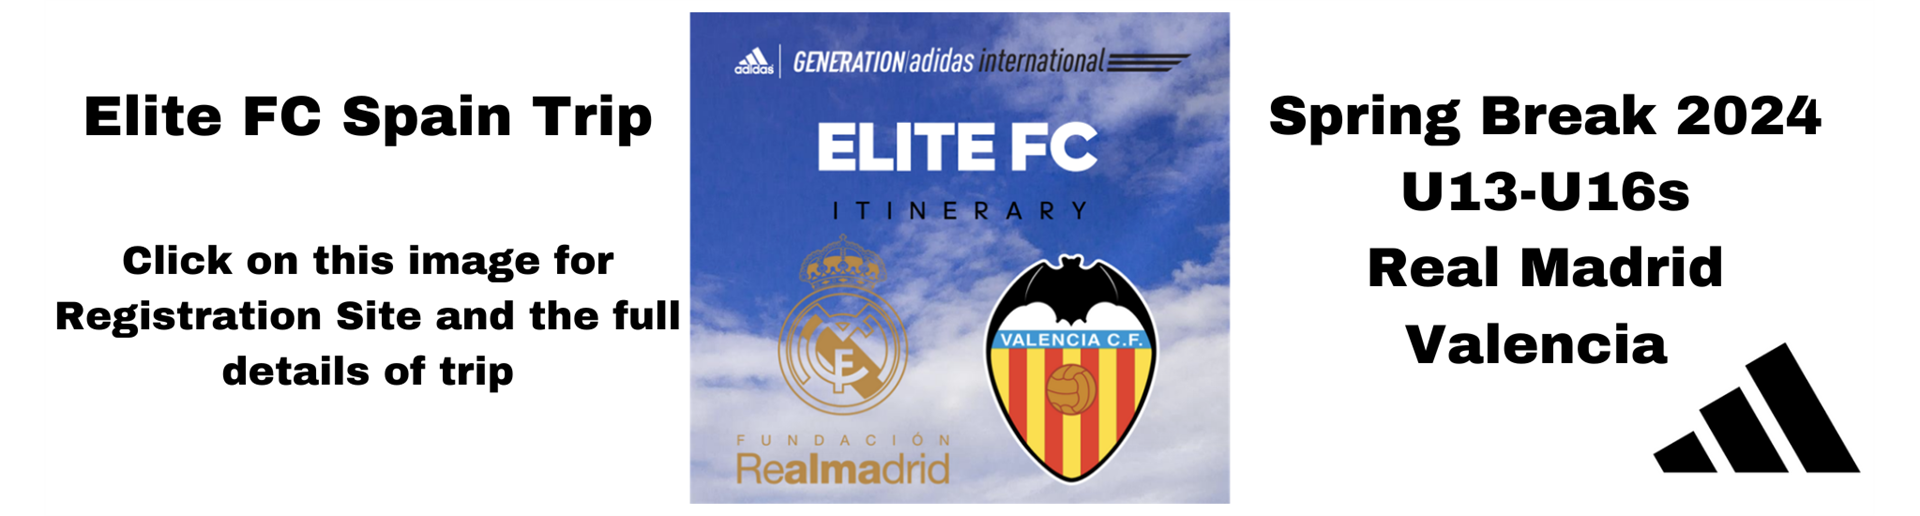 Elite FC 2024 Spring Break Spain Trip